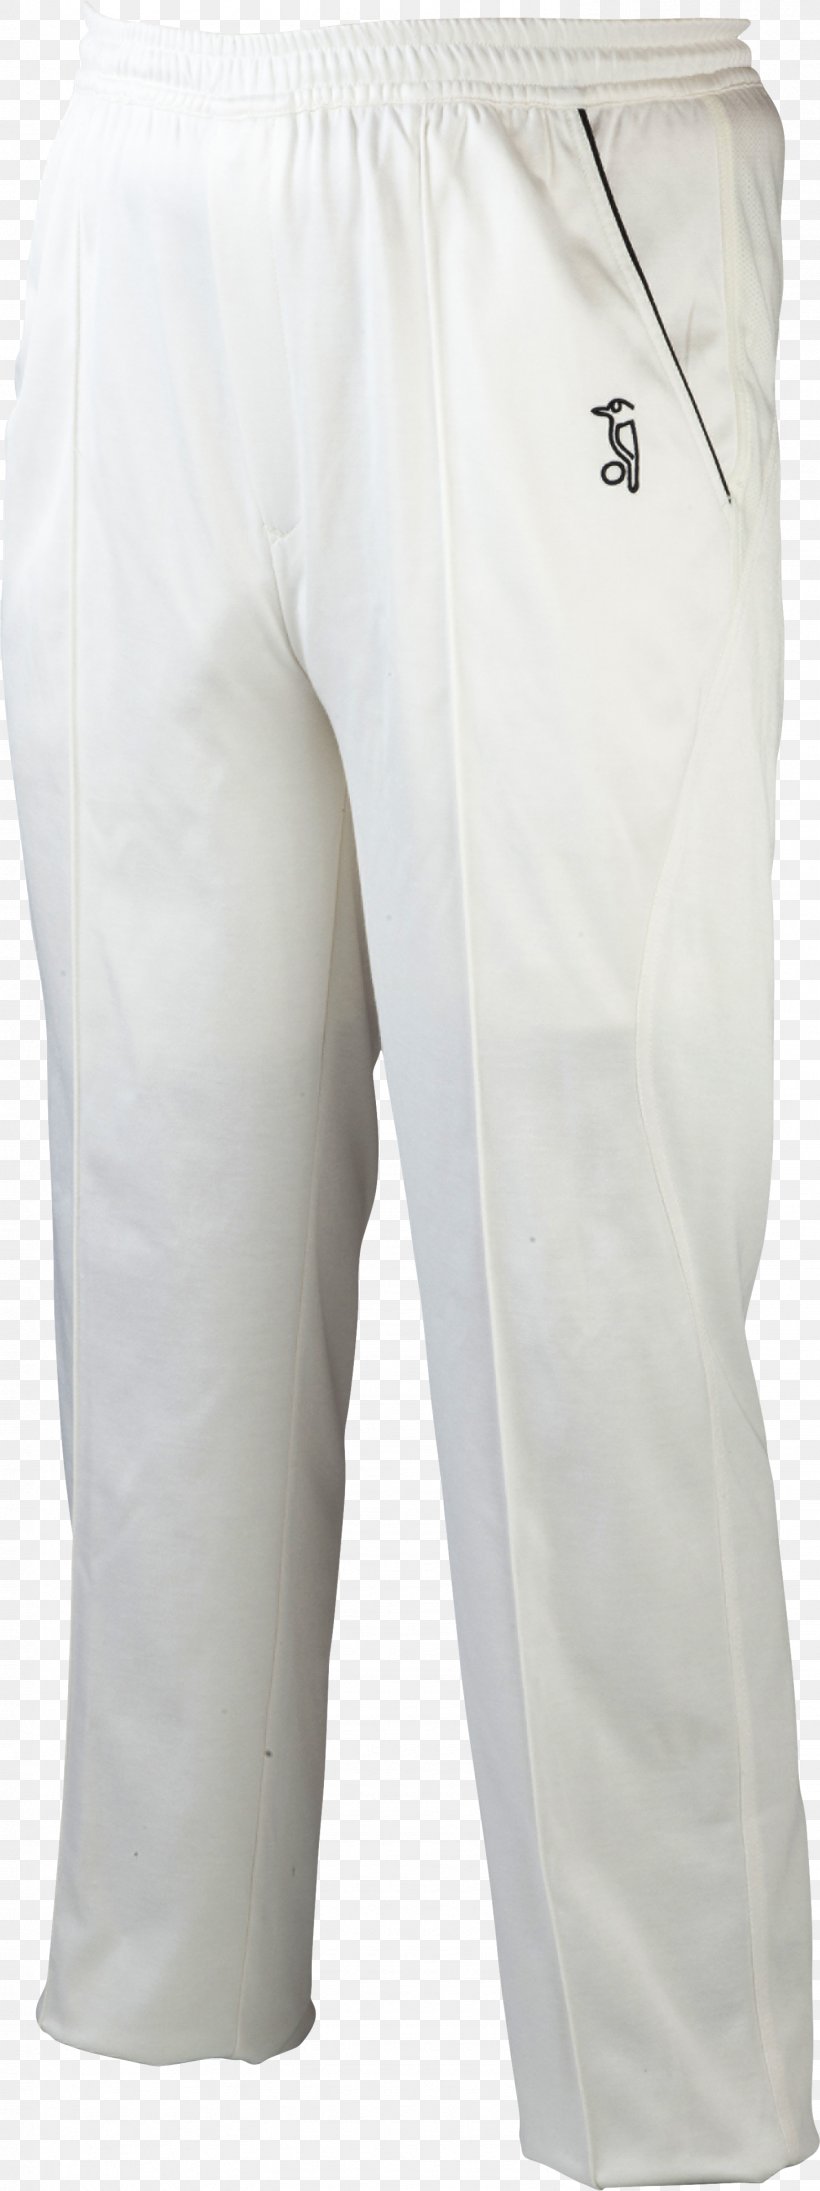 Bermuda Shorts Pants, PNG, 1483x3963px, Bermuda Shorts, Active Pants, Active Shorts, Joint, Pants Download Free